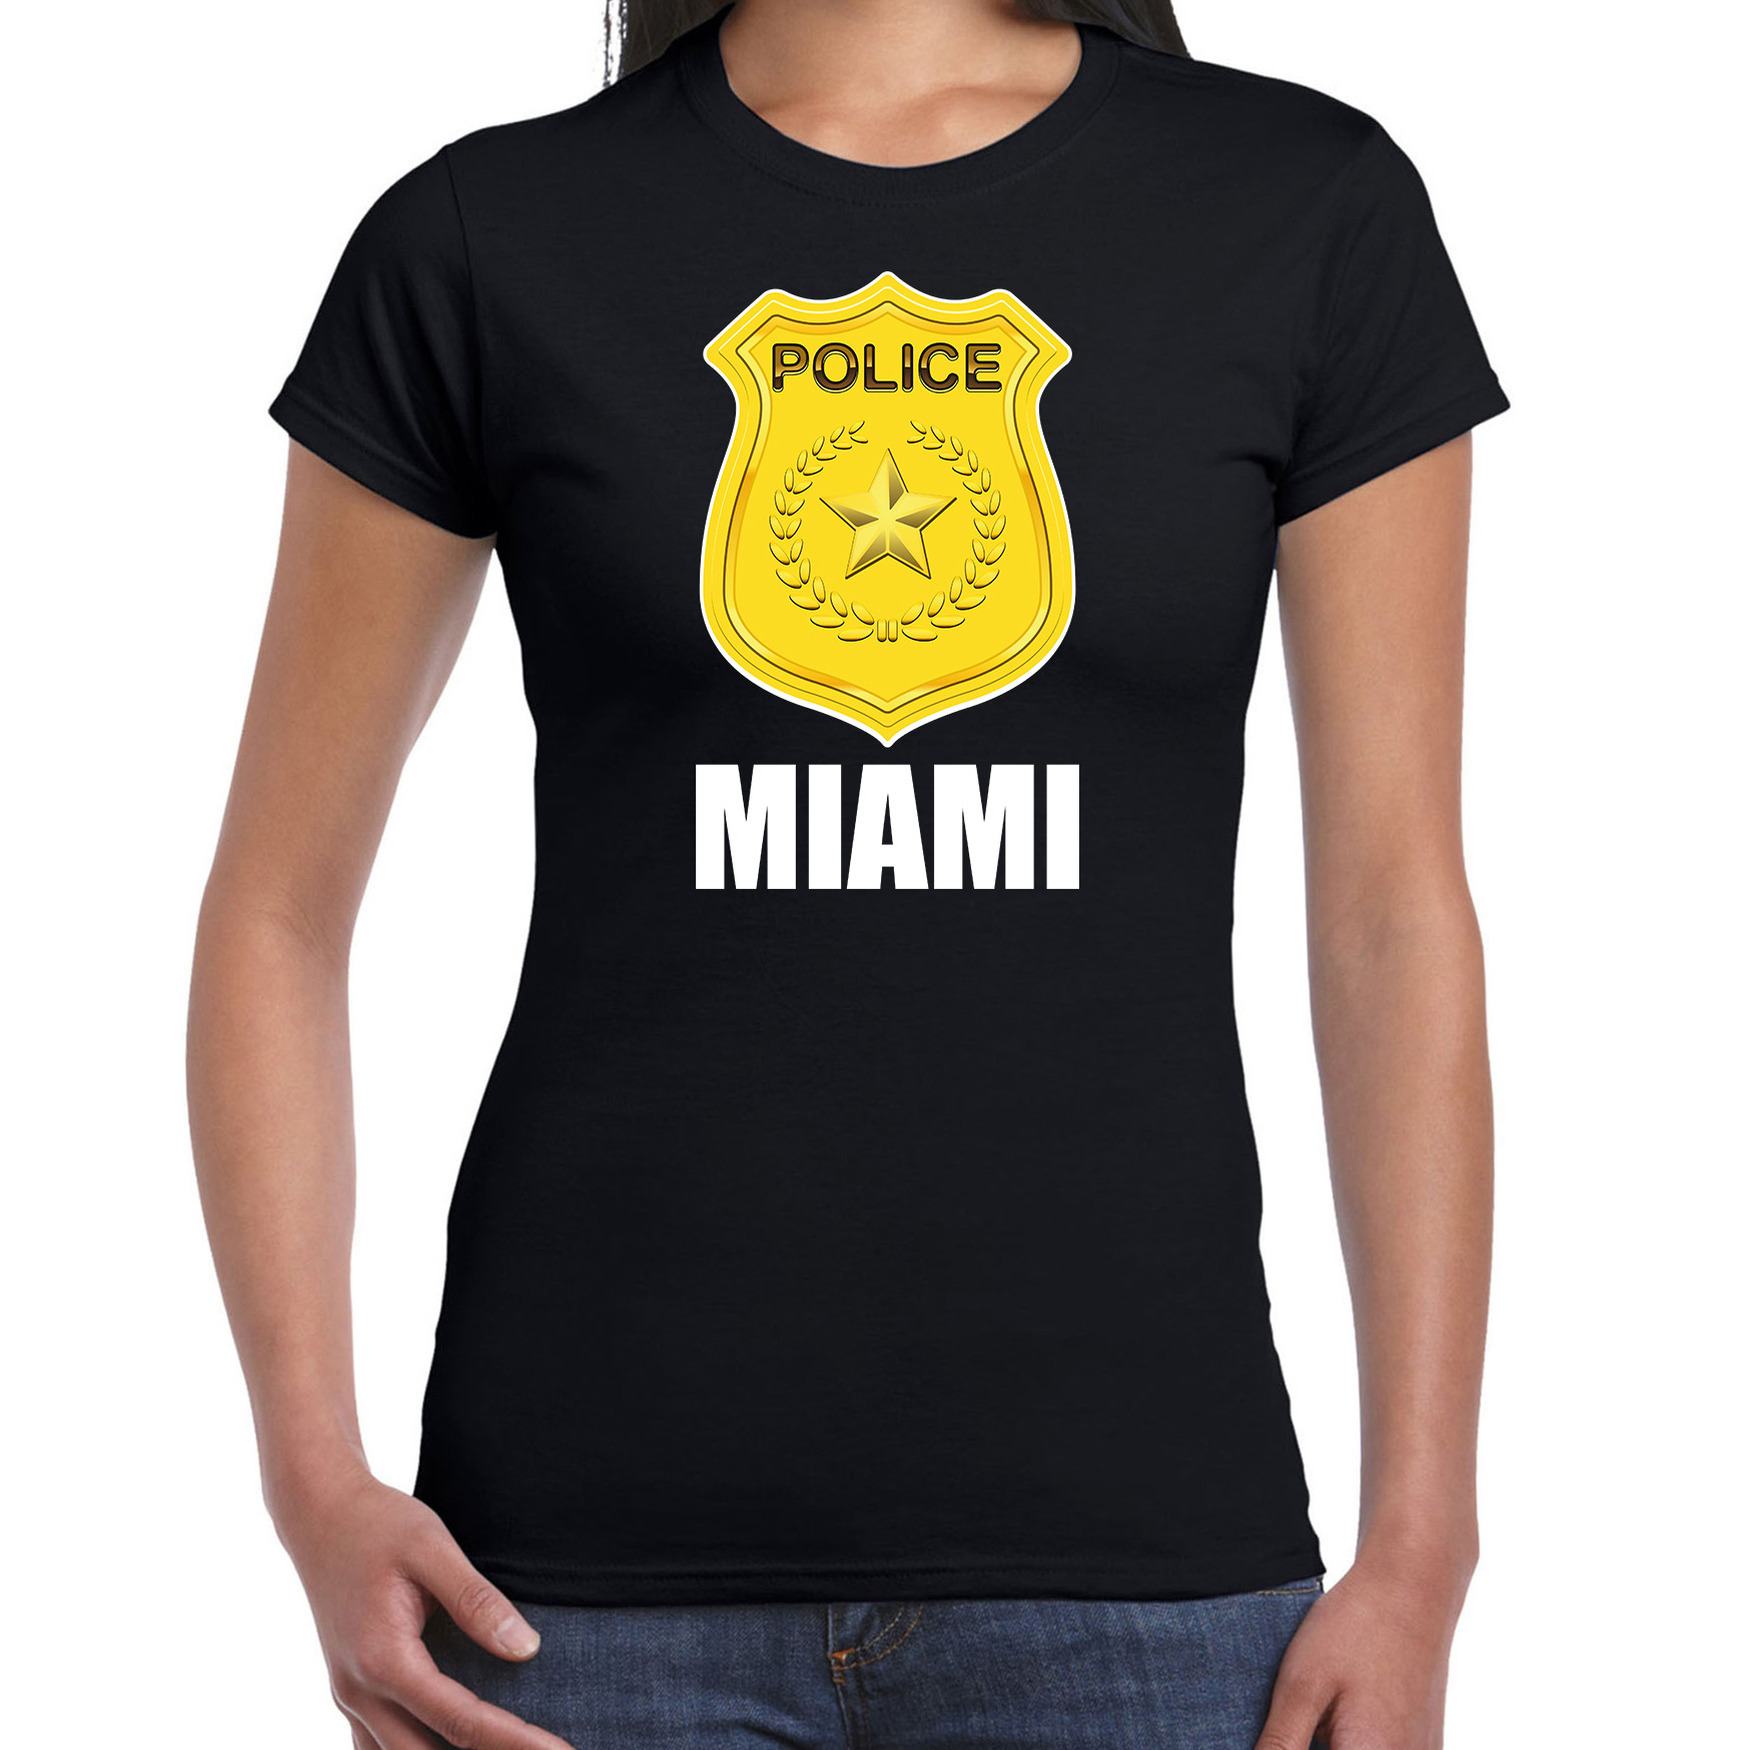 Miami politie-police embleem t-shirt zwart voor dames